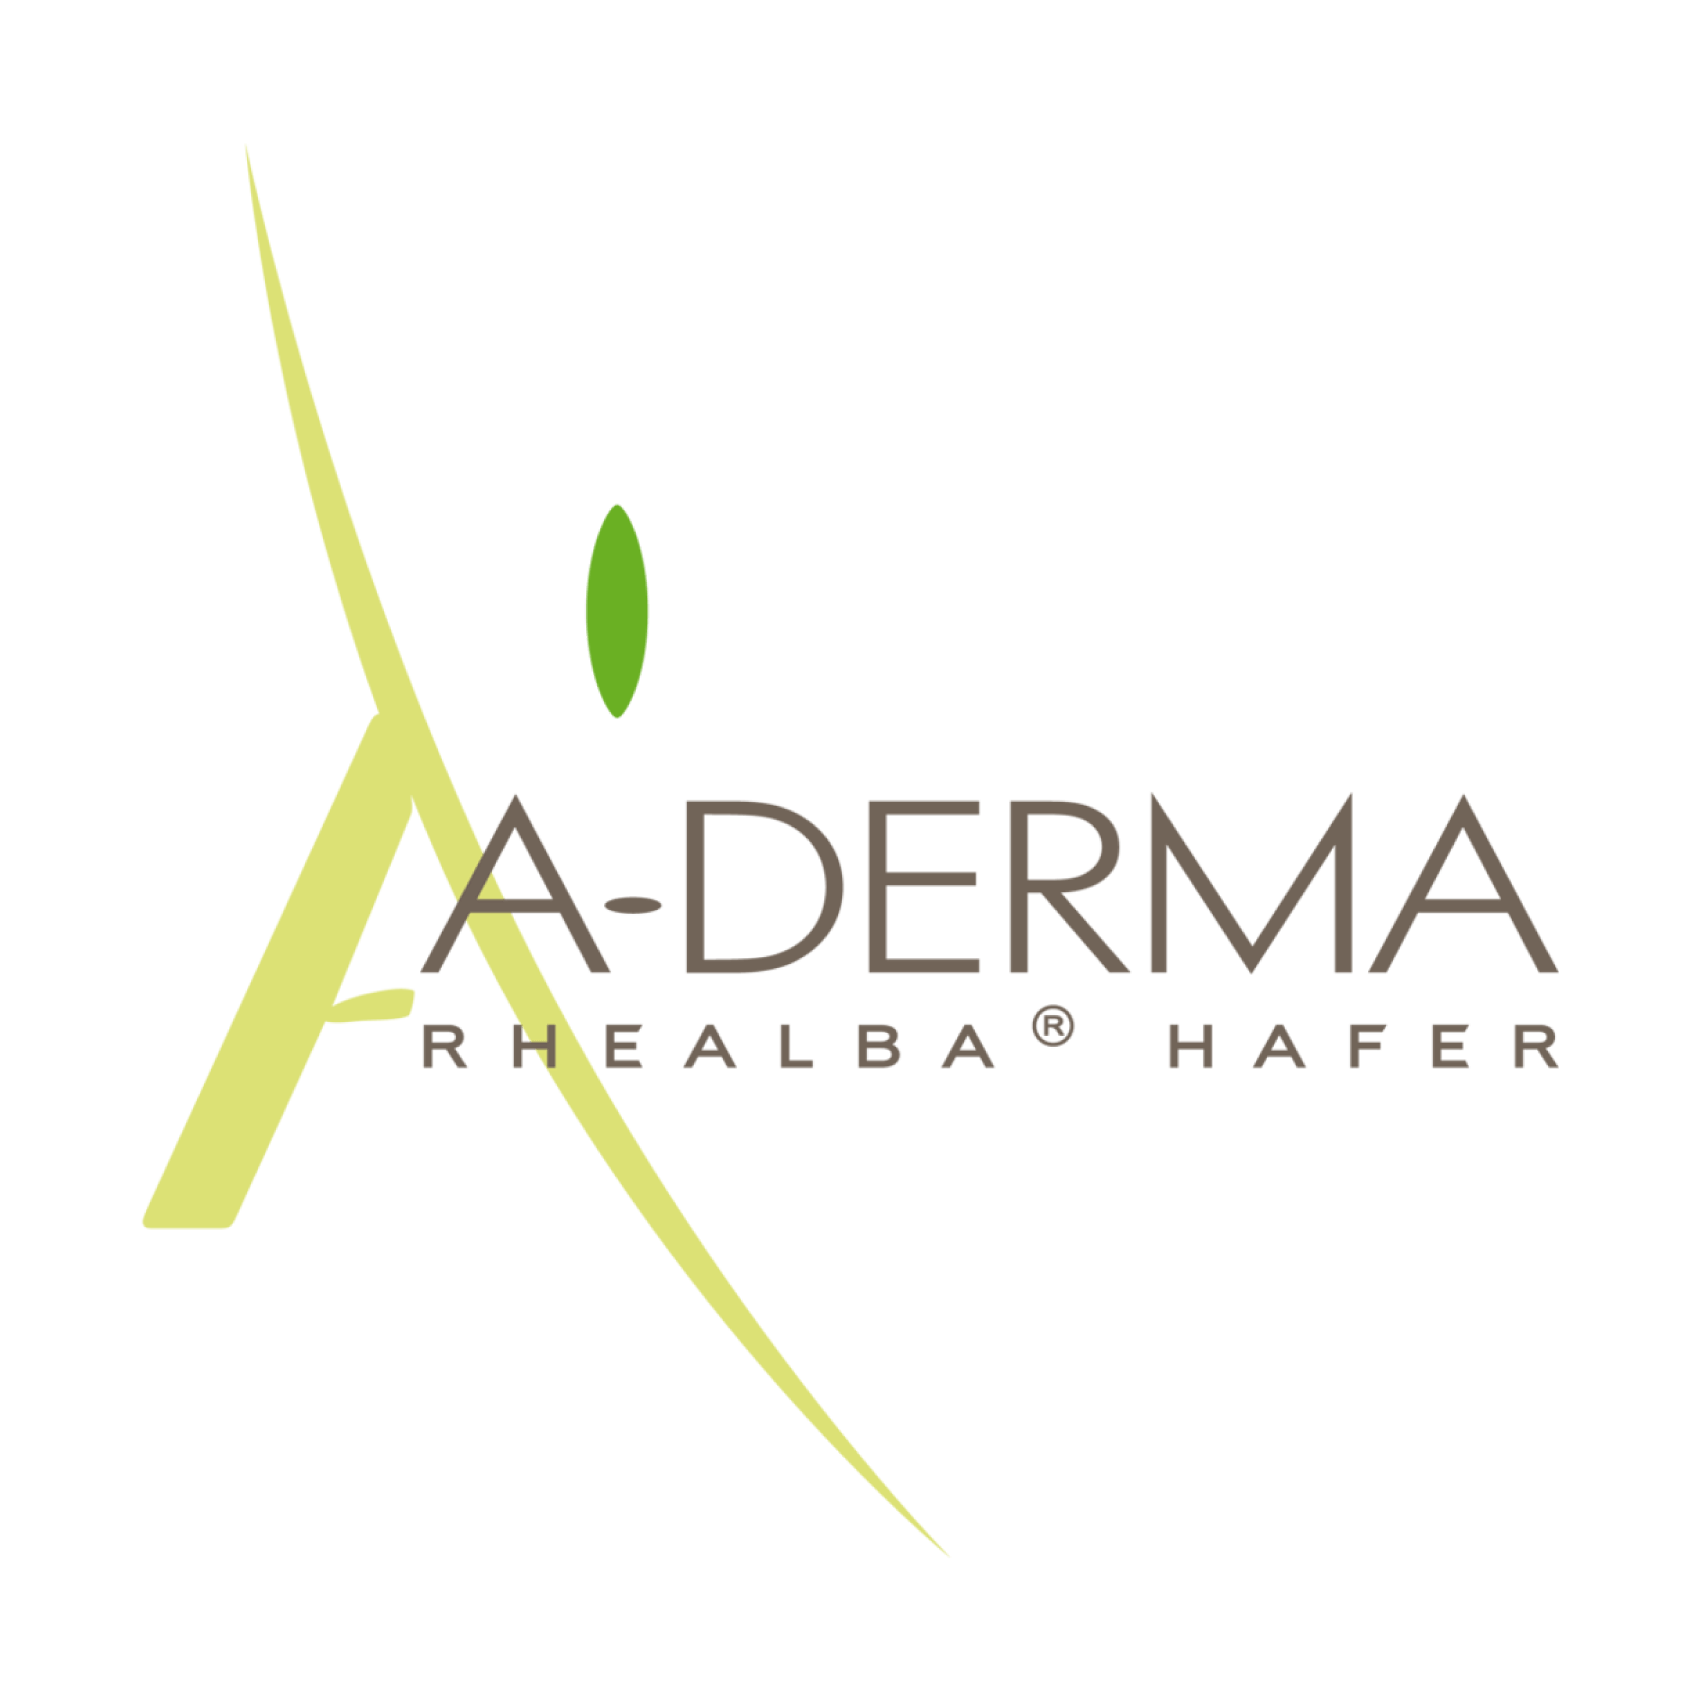 A-derma  partenaire de CED-WEB